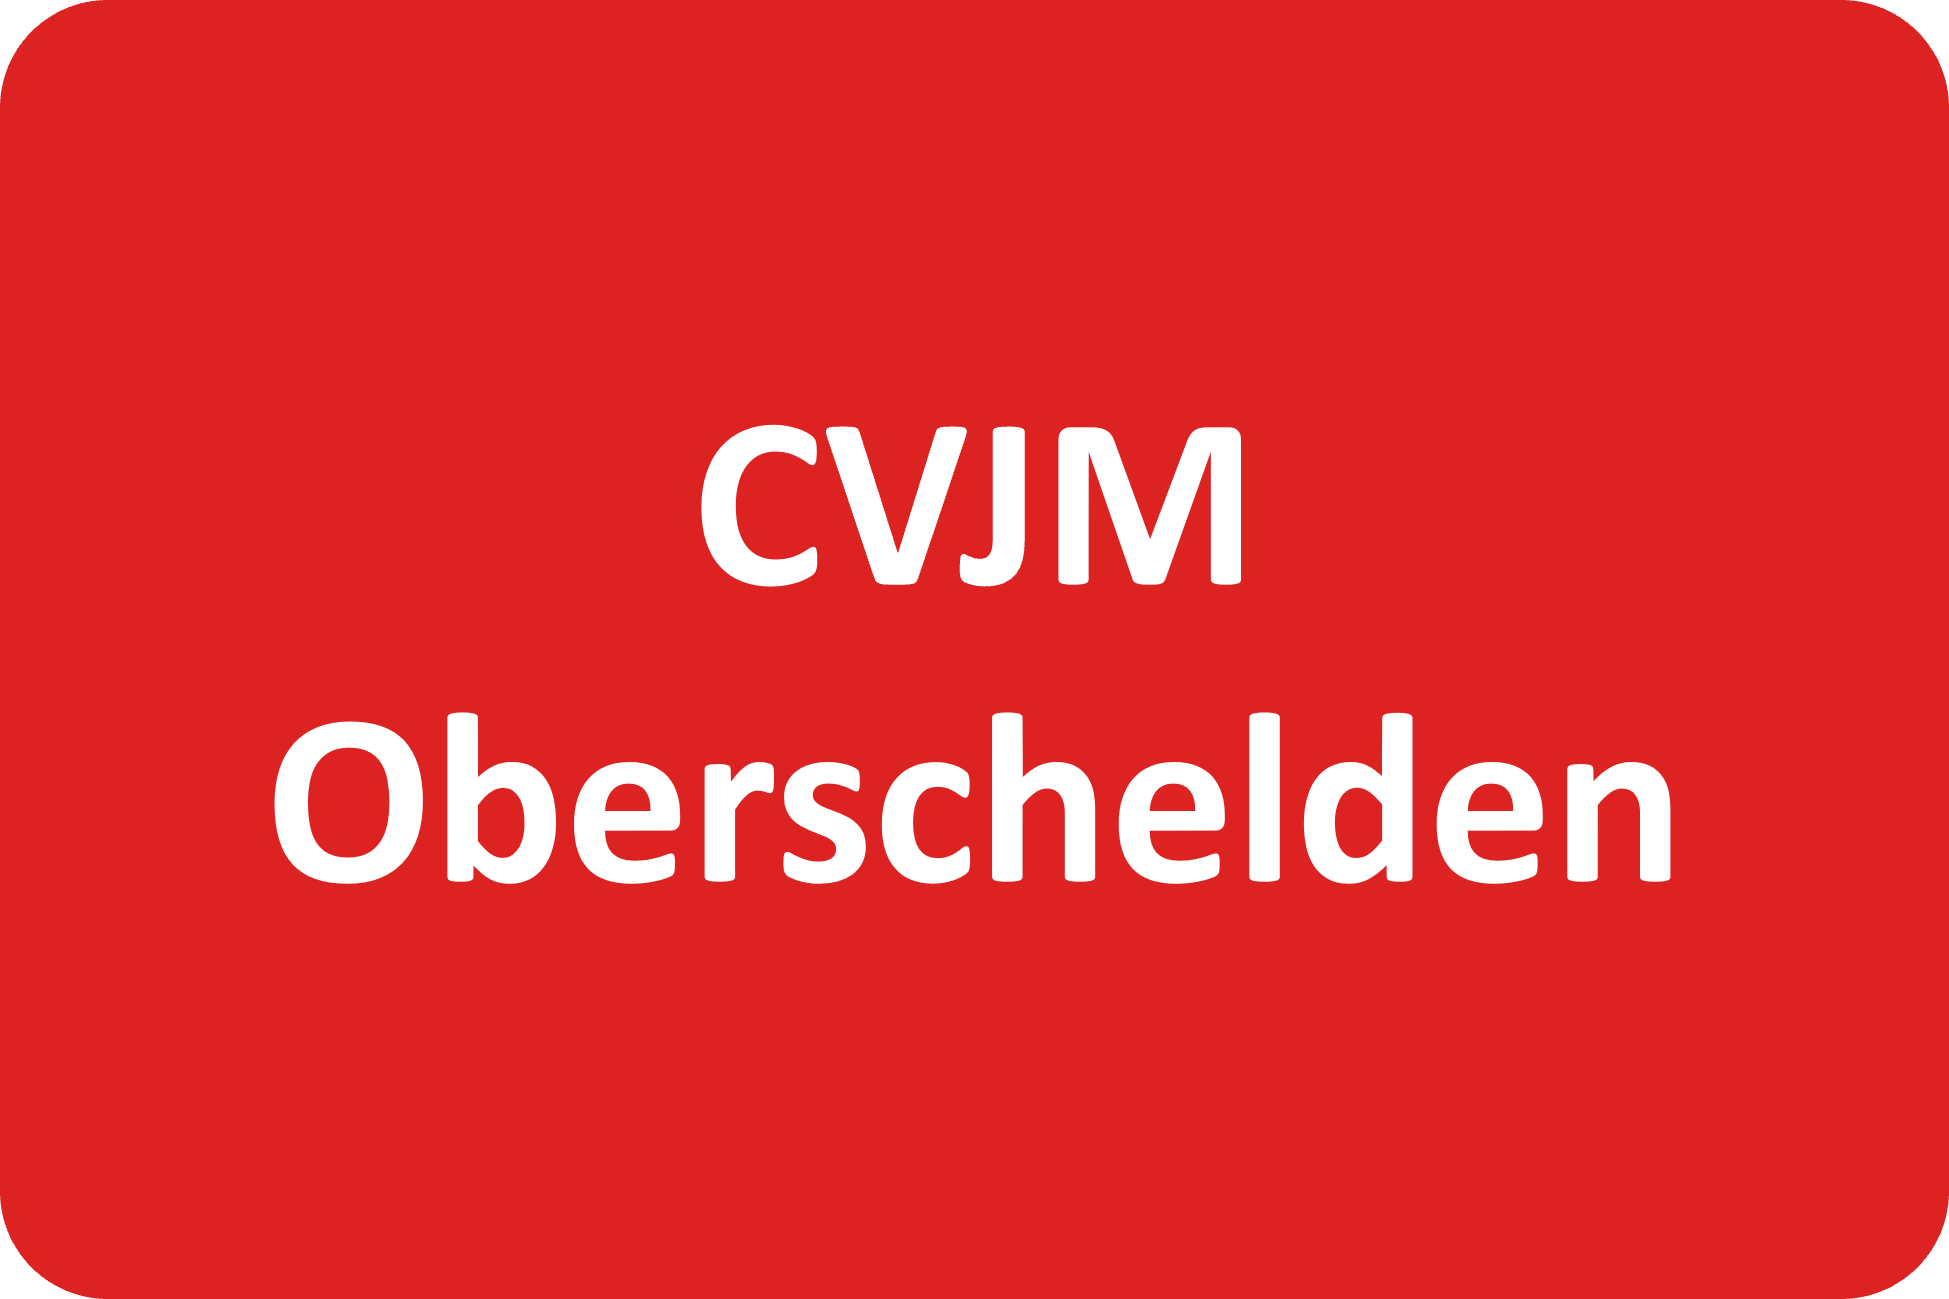 CVJM Oberschelden